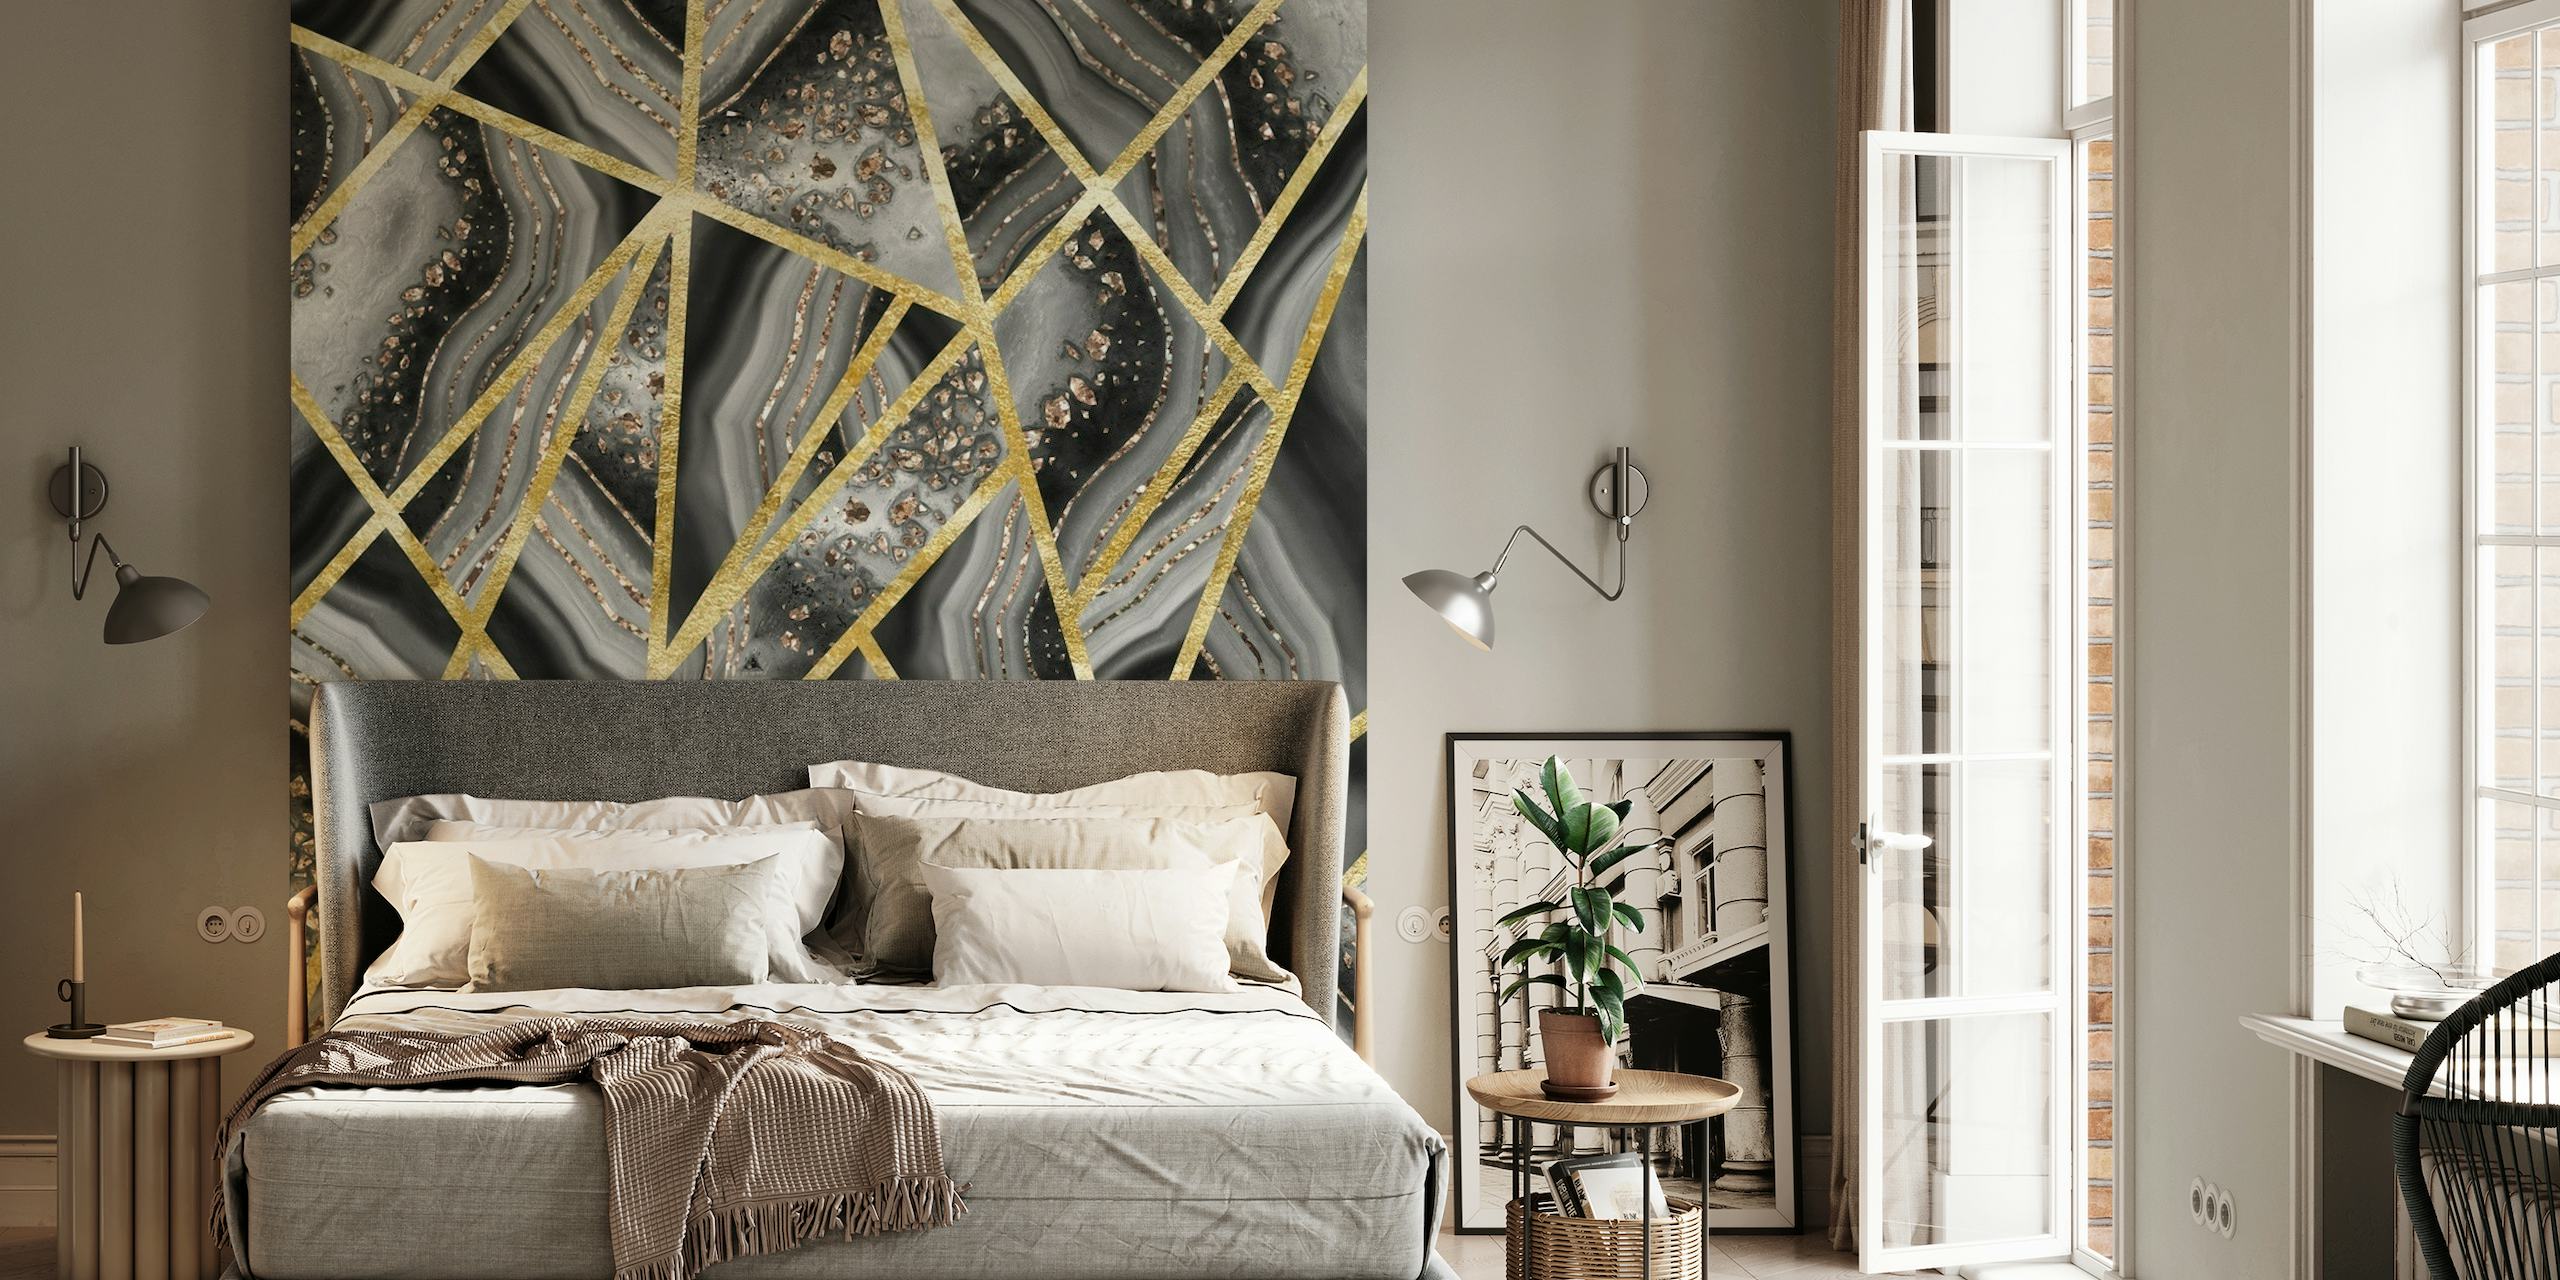 Luxuriöses Wandbild mit schwarzem Achatsteinmuster mit goldenen Linien und silbergrauen Adern.